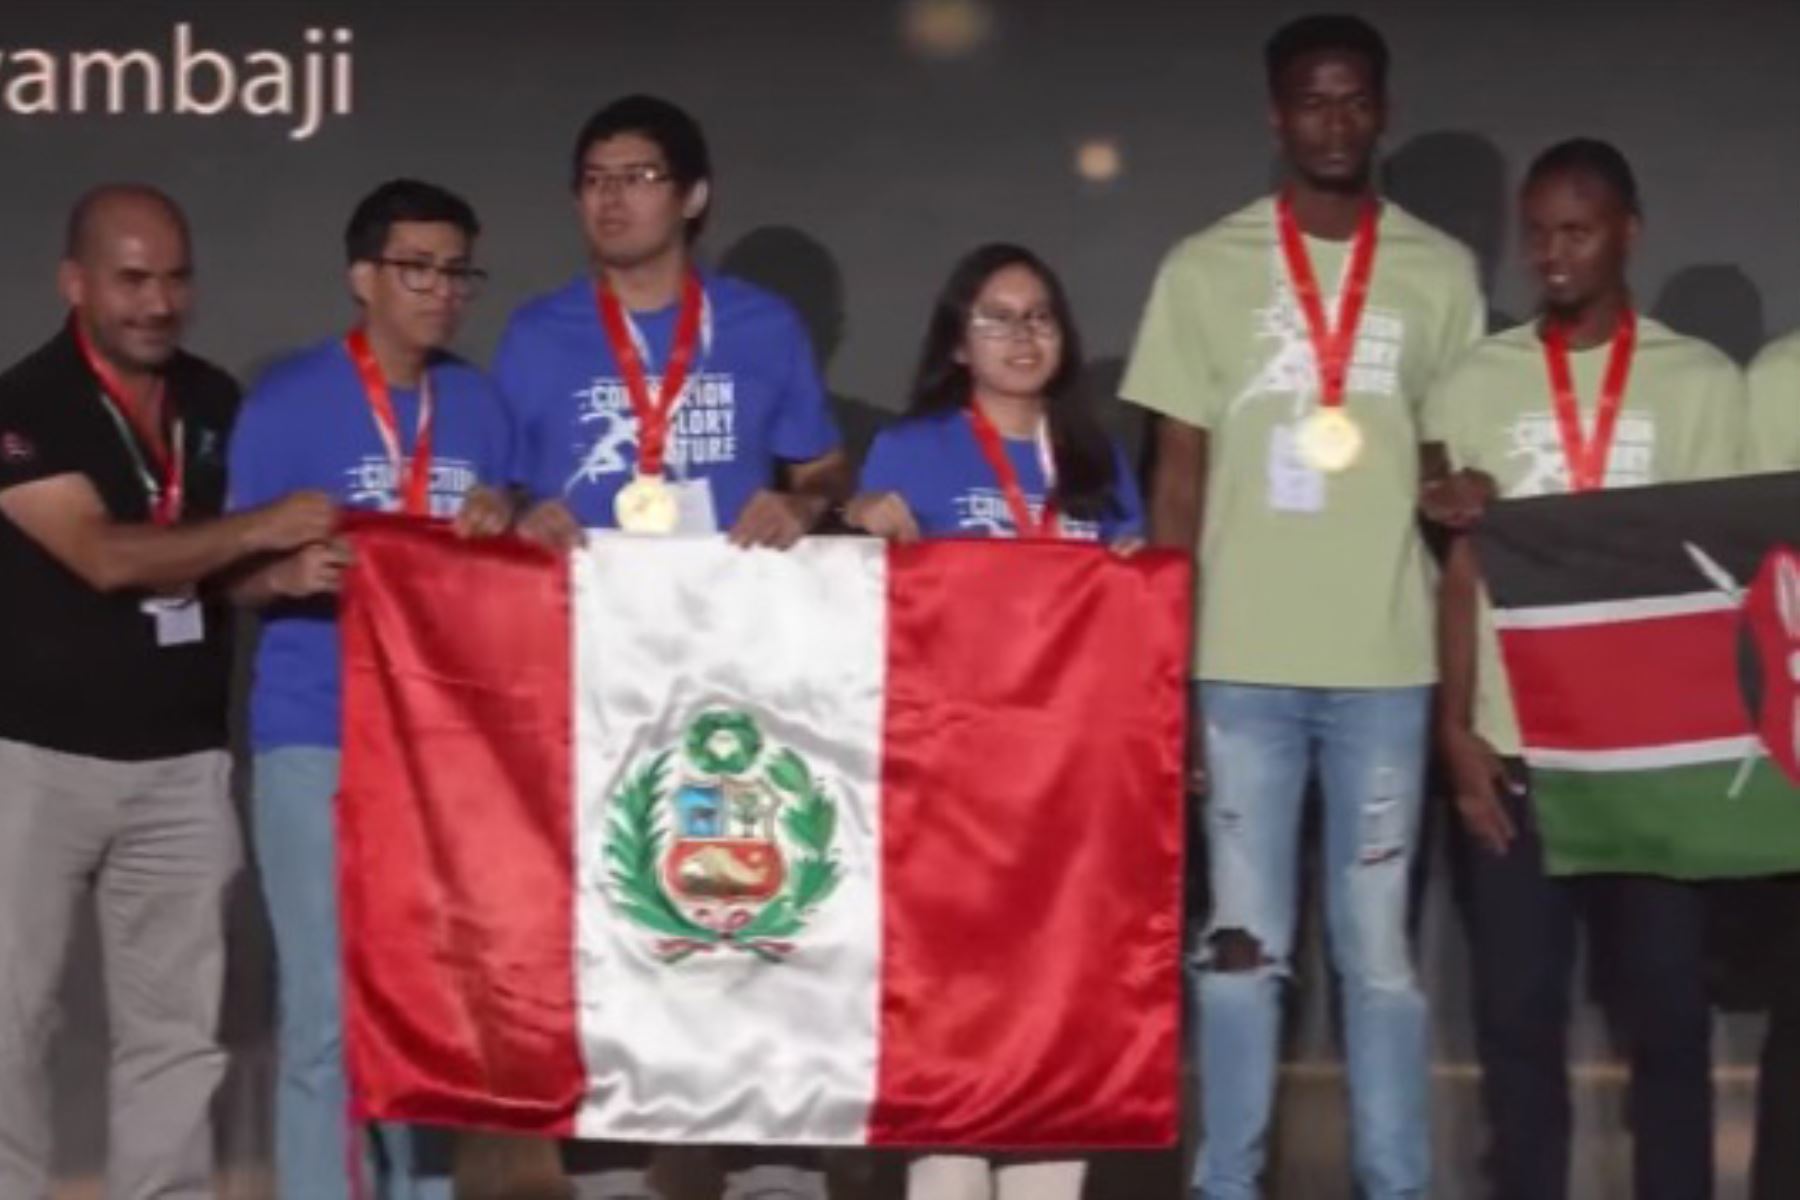 El equipo de San Marcos, conformado por los estudiantes Camila Galván, Steven Zacarías y Jhonny Chauca, y dirigido por el docente Nilo Eloy Carrasco Ore, obtuvo el primer lugar de la categoría Network Track.